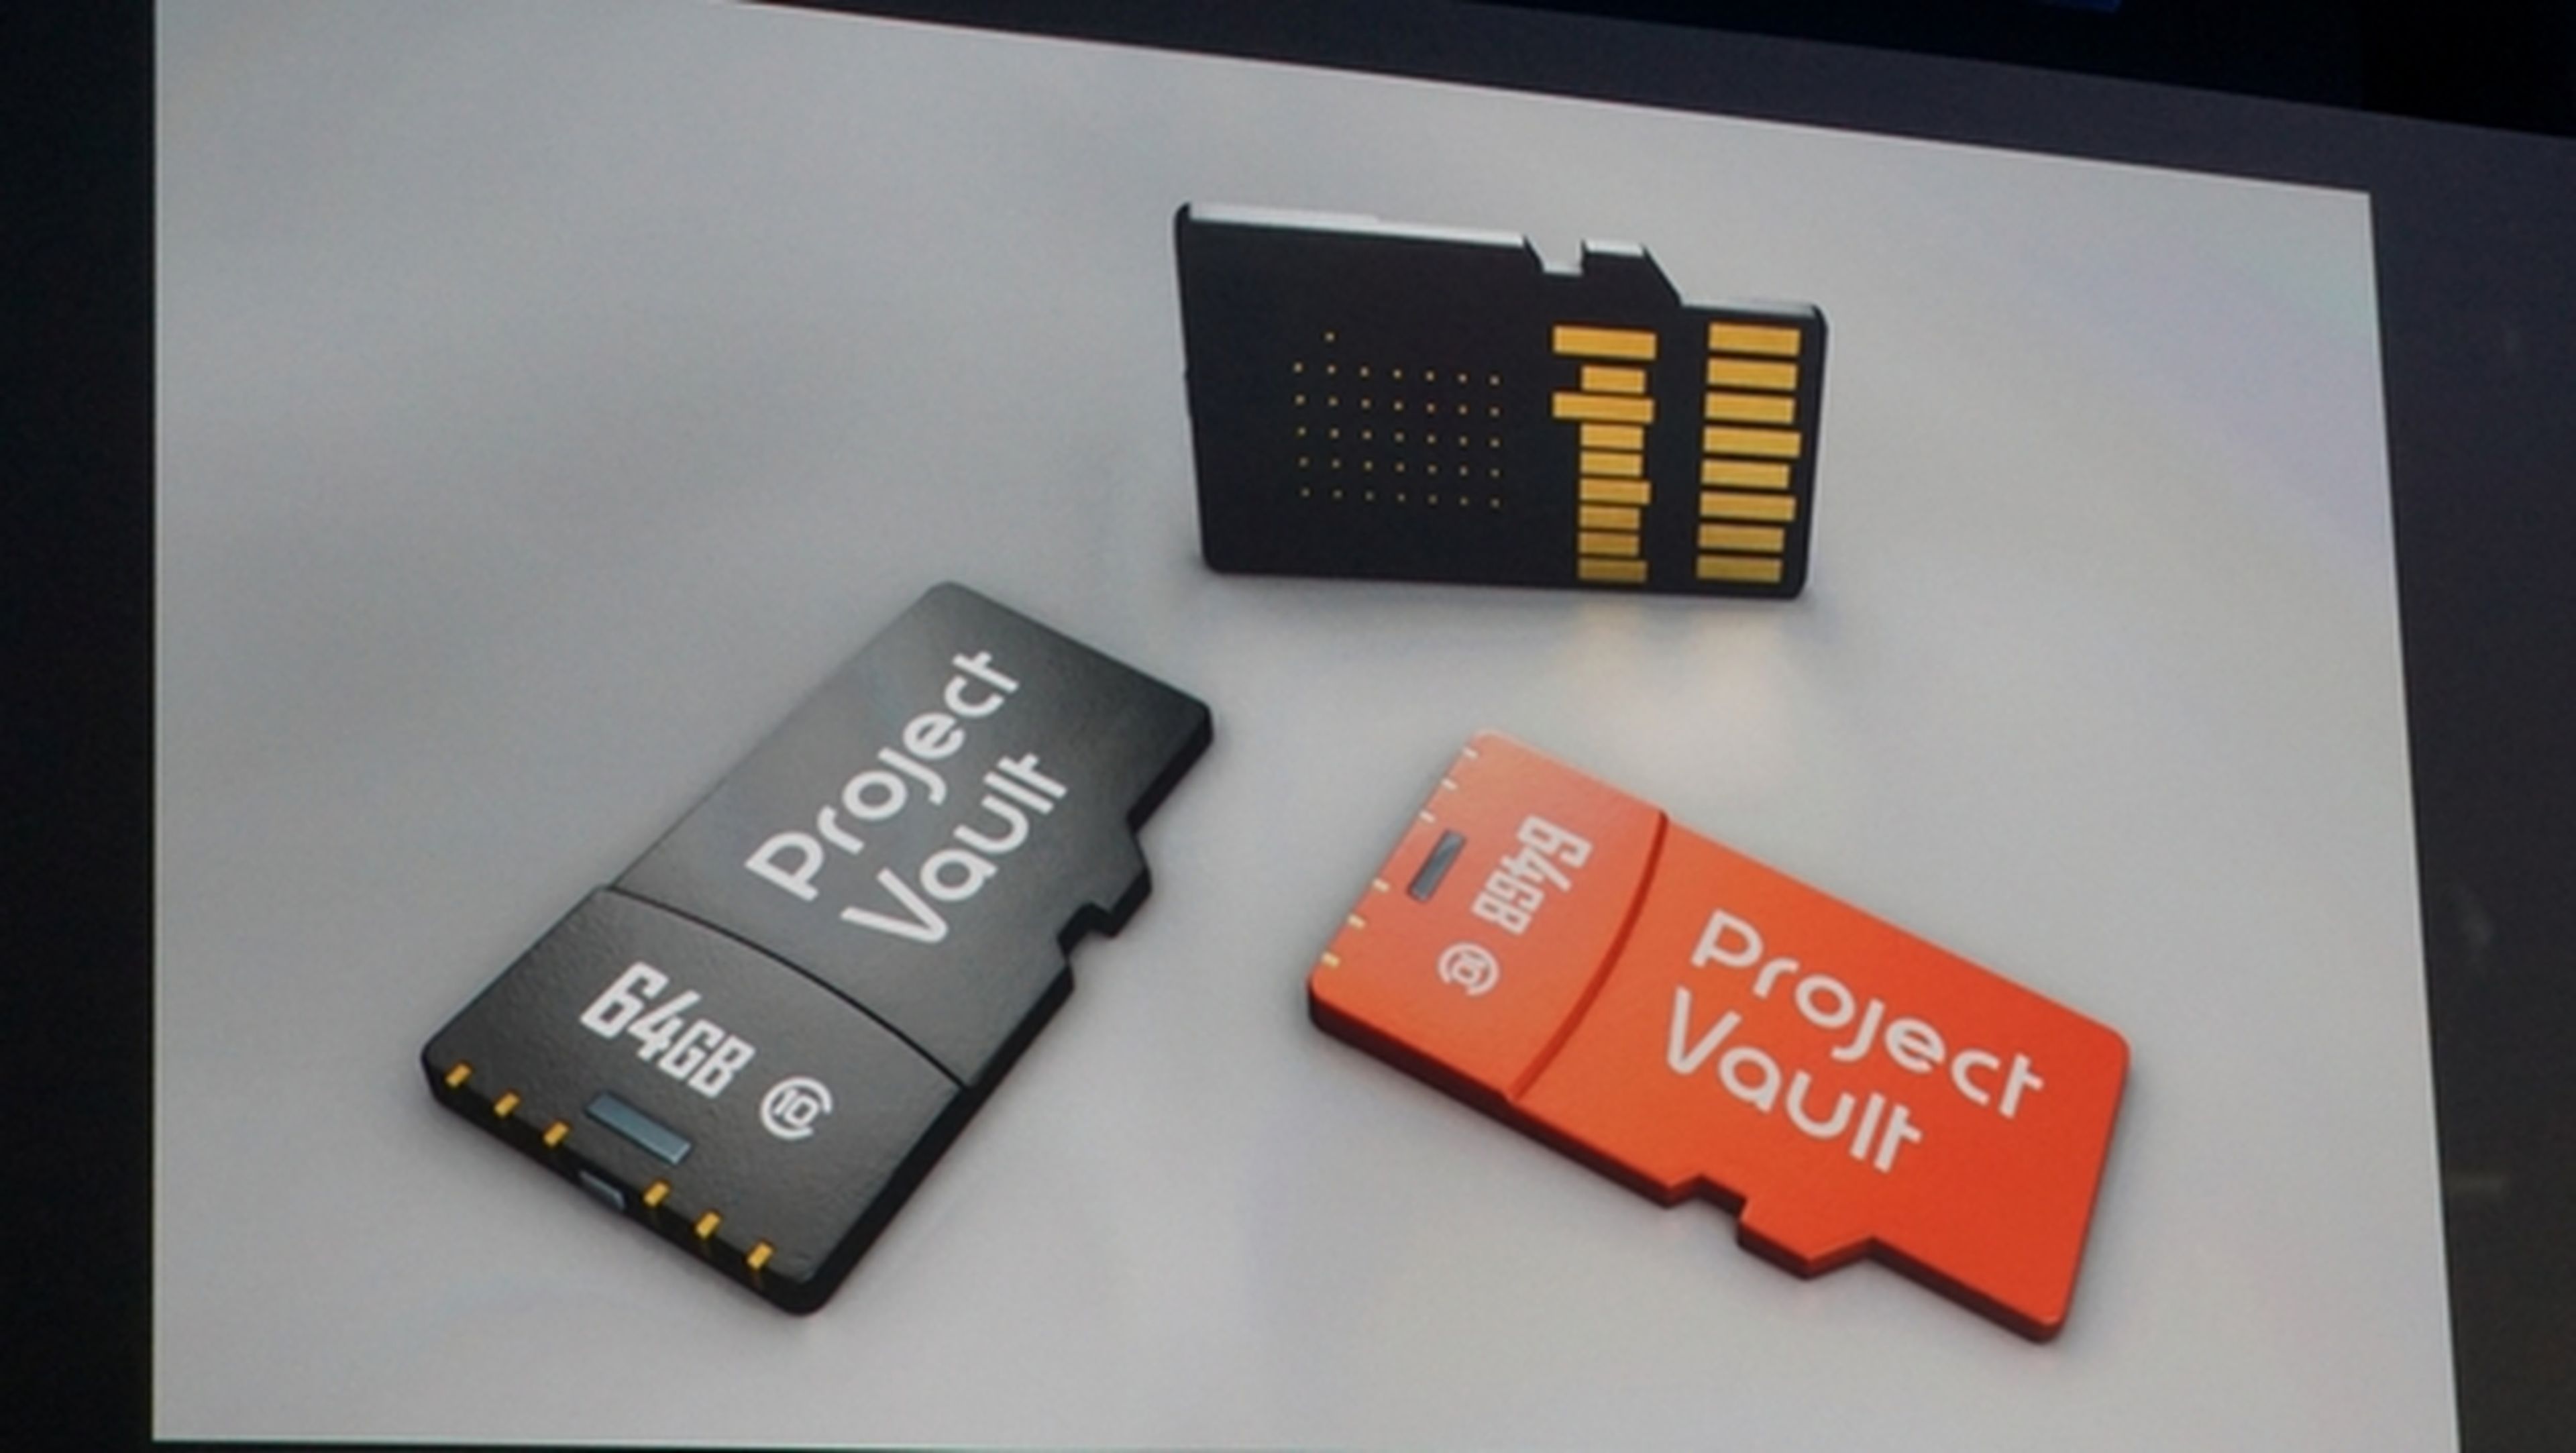 Adiós a las contraseñas con Project Vault, la tarjeta microSD de Google